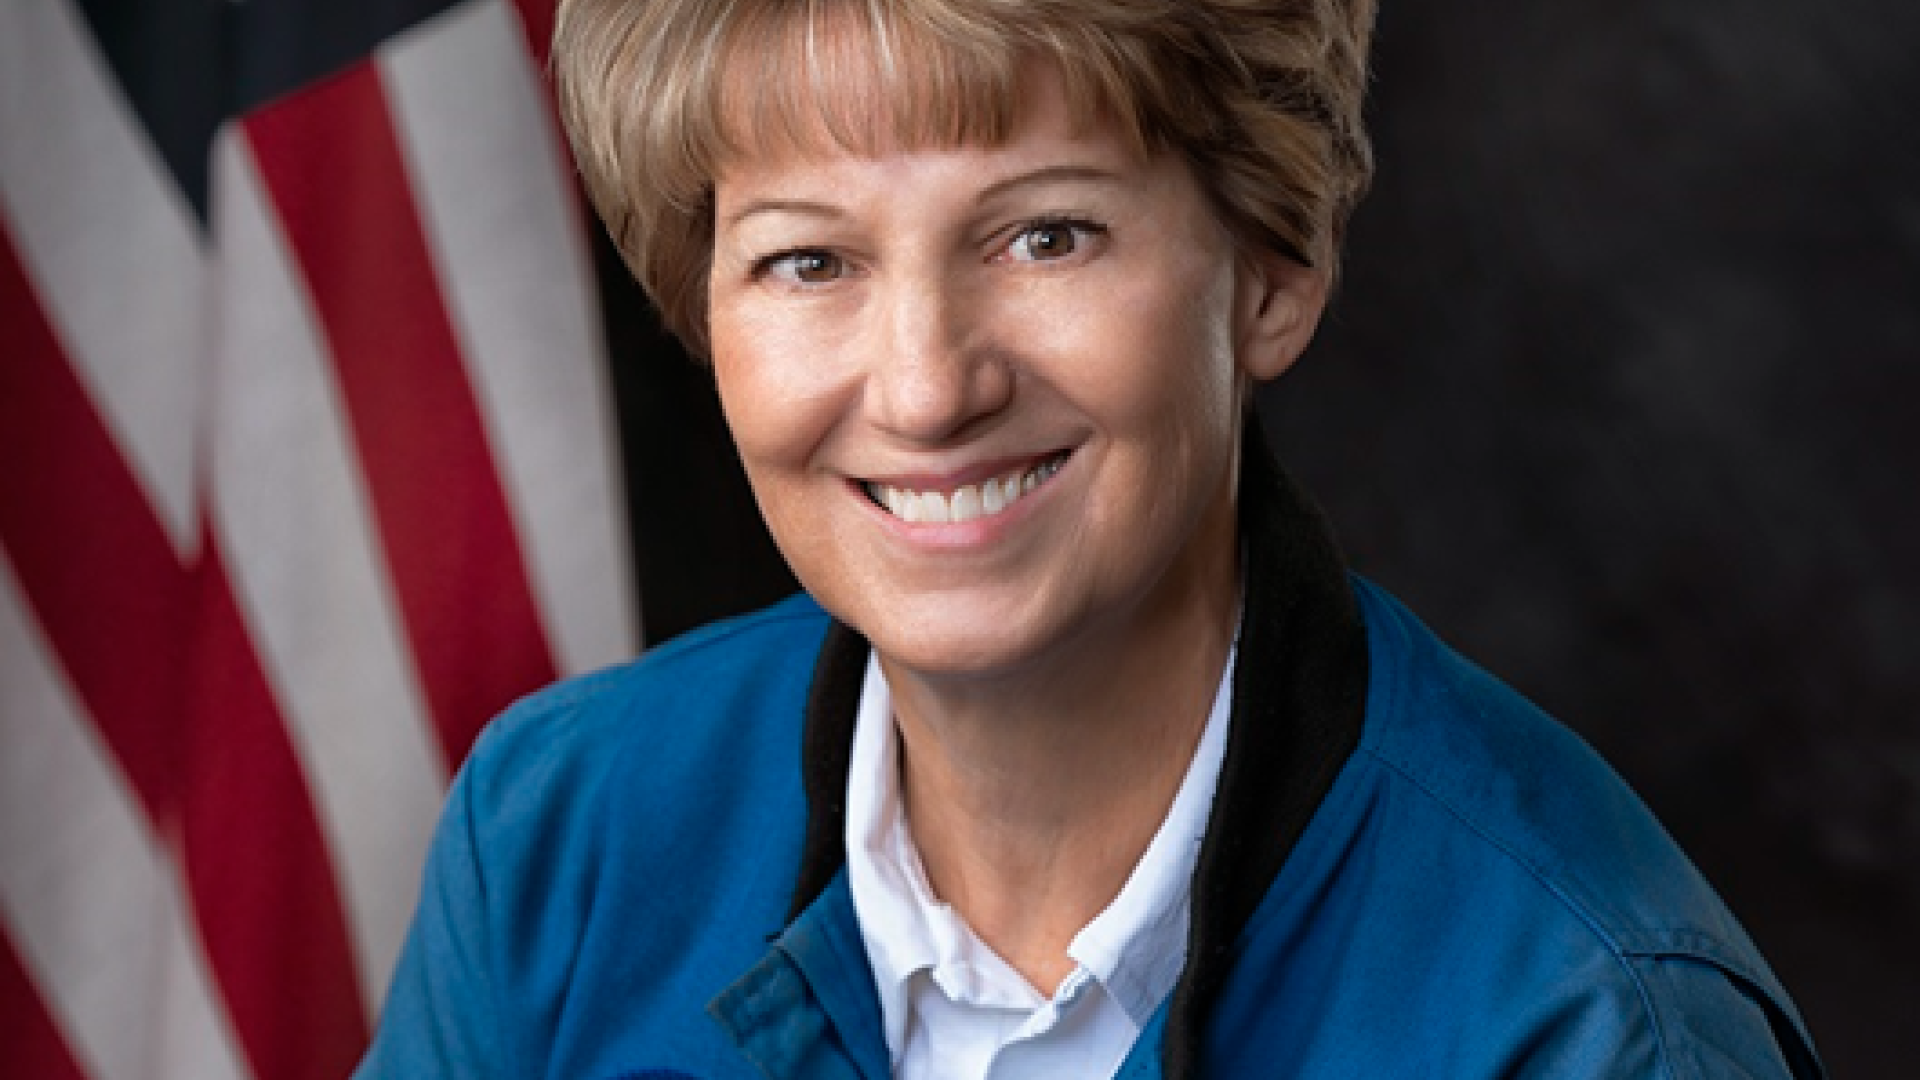 2021 – Col. Eileen Collins